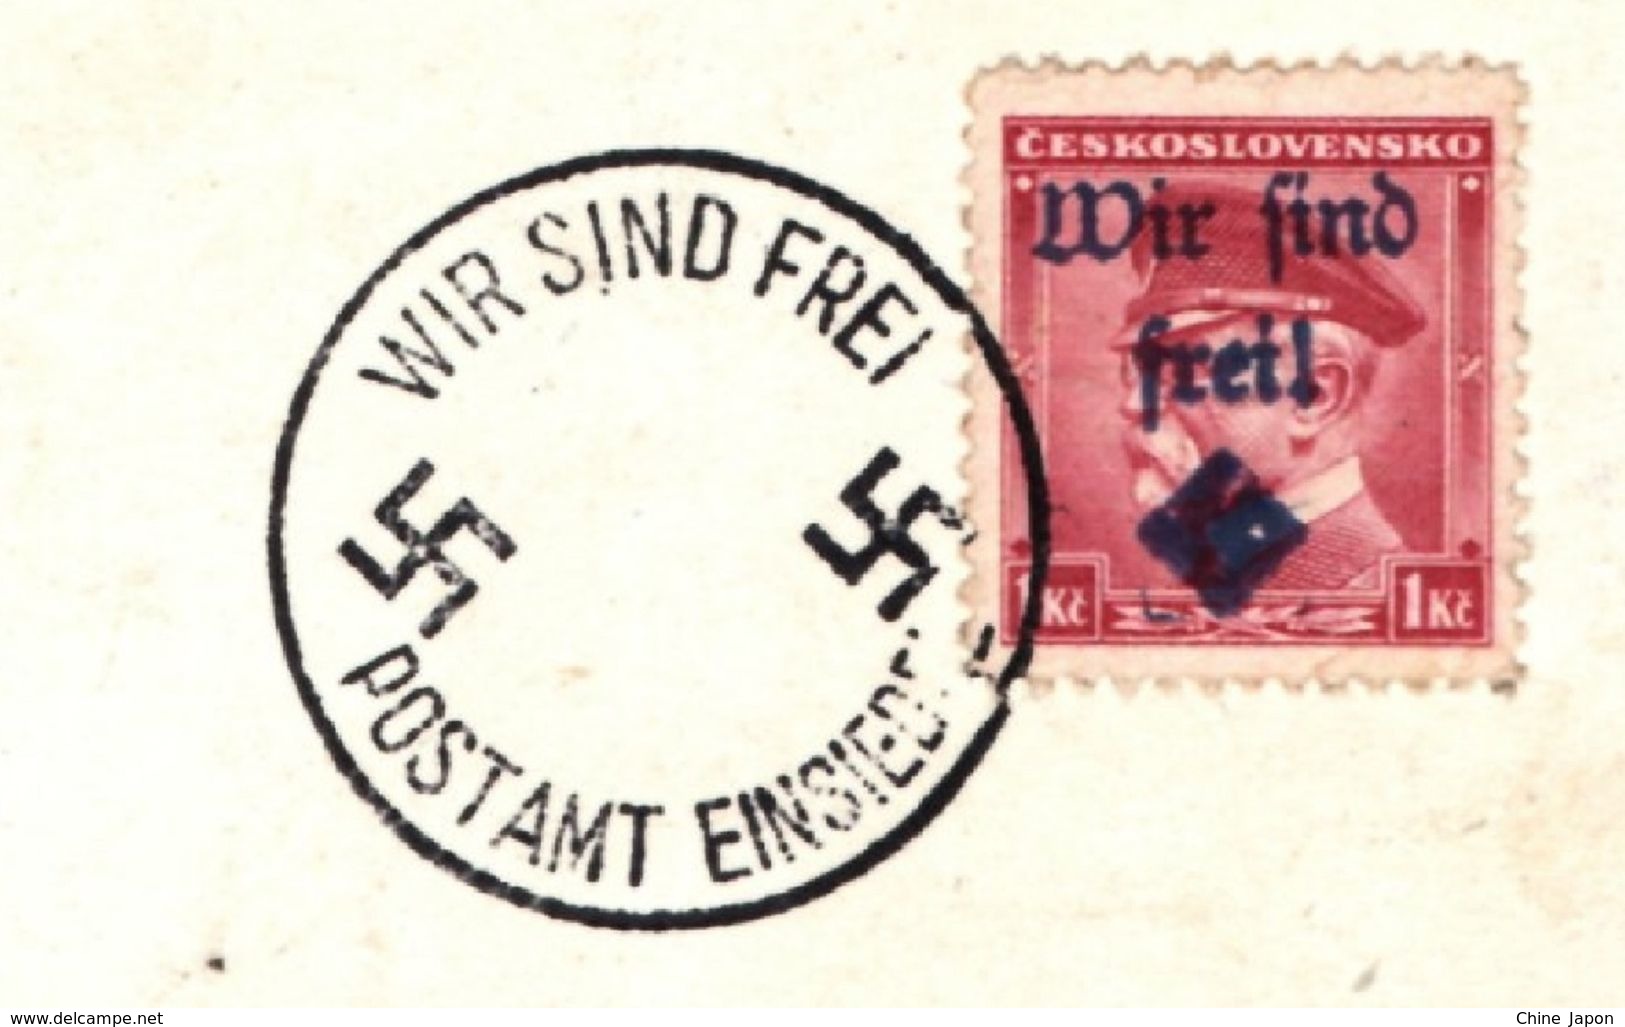 1938 München Munich Meeting Adolf Hitler / Mussolini / Chamberlain & Daladier PHOTO Postcard Cpa Stamp Wir Sind Frei - War 1939-45